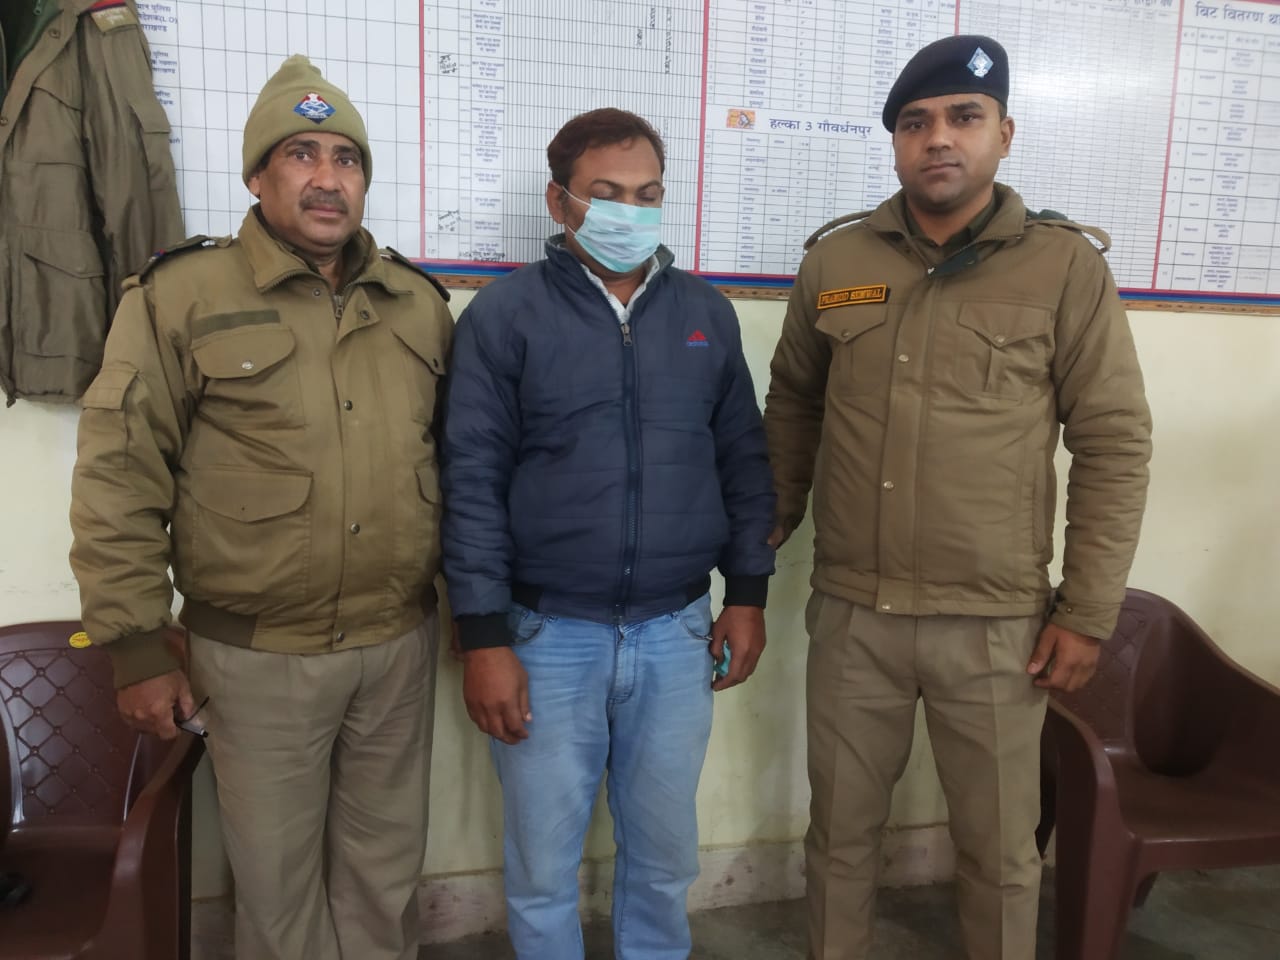 वरिष्ठ पुलिस अधीक्षक महोदय हरिद्वार द्वारा उद्घोषित 5 हजार का इनामी खानपुर पुलिस द्वारा बिजनौर उत्तर प्रदेश से किया गया गिरफ्तार